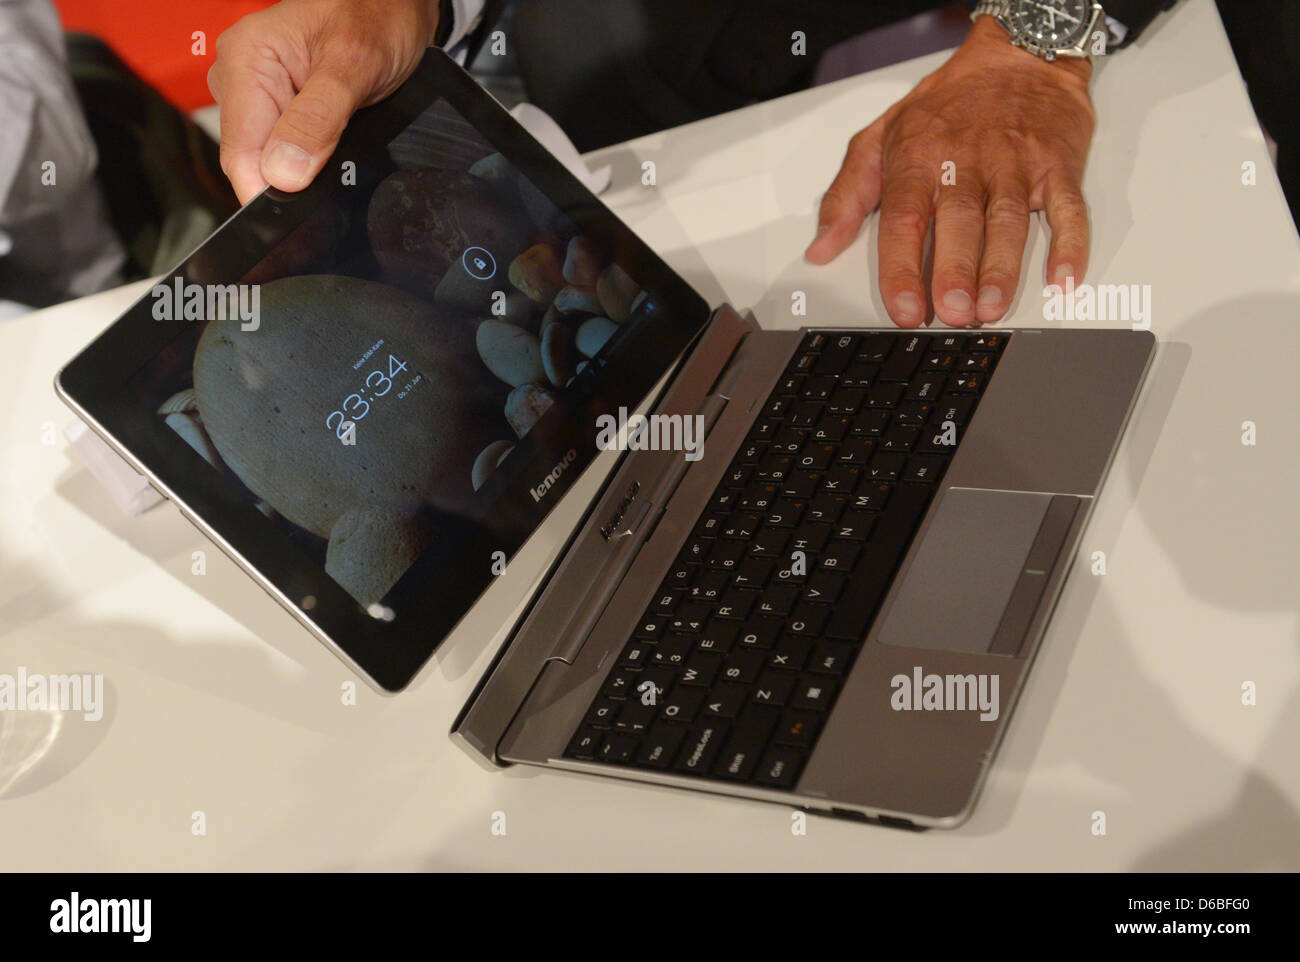 Fabricant de l'ordinateur Lenovo présente une tablette Android avec clavier  amovible au stand d'exposition à l'exposition de Radio International (CDI)  2012 à Berlin, Allemagne, 30 août 2012. Cdi a lieu entre le